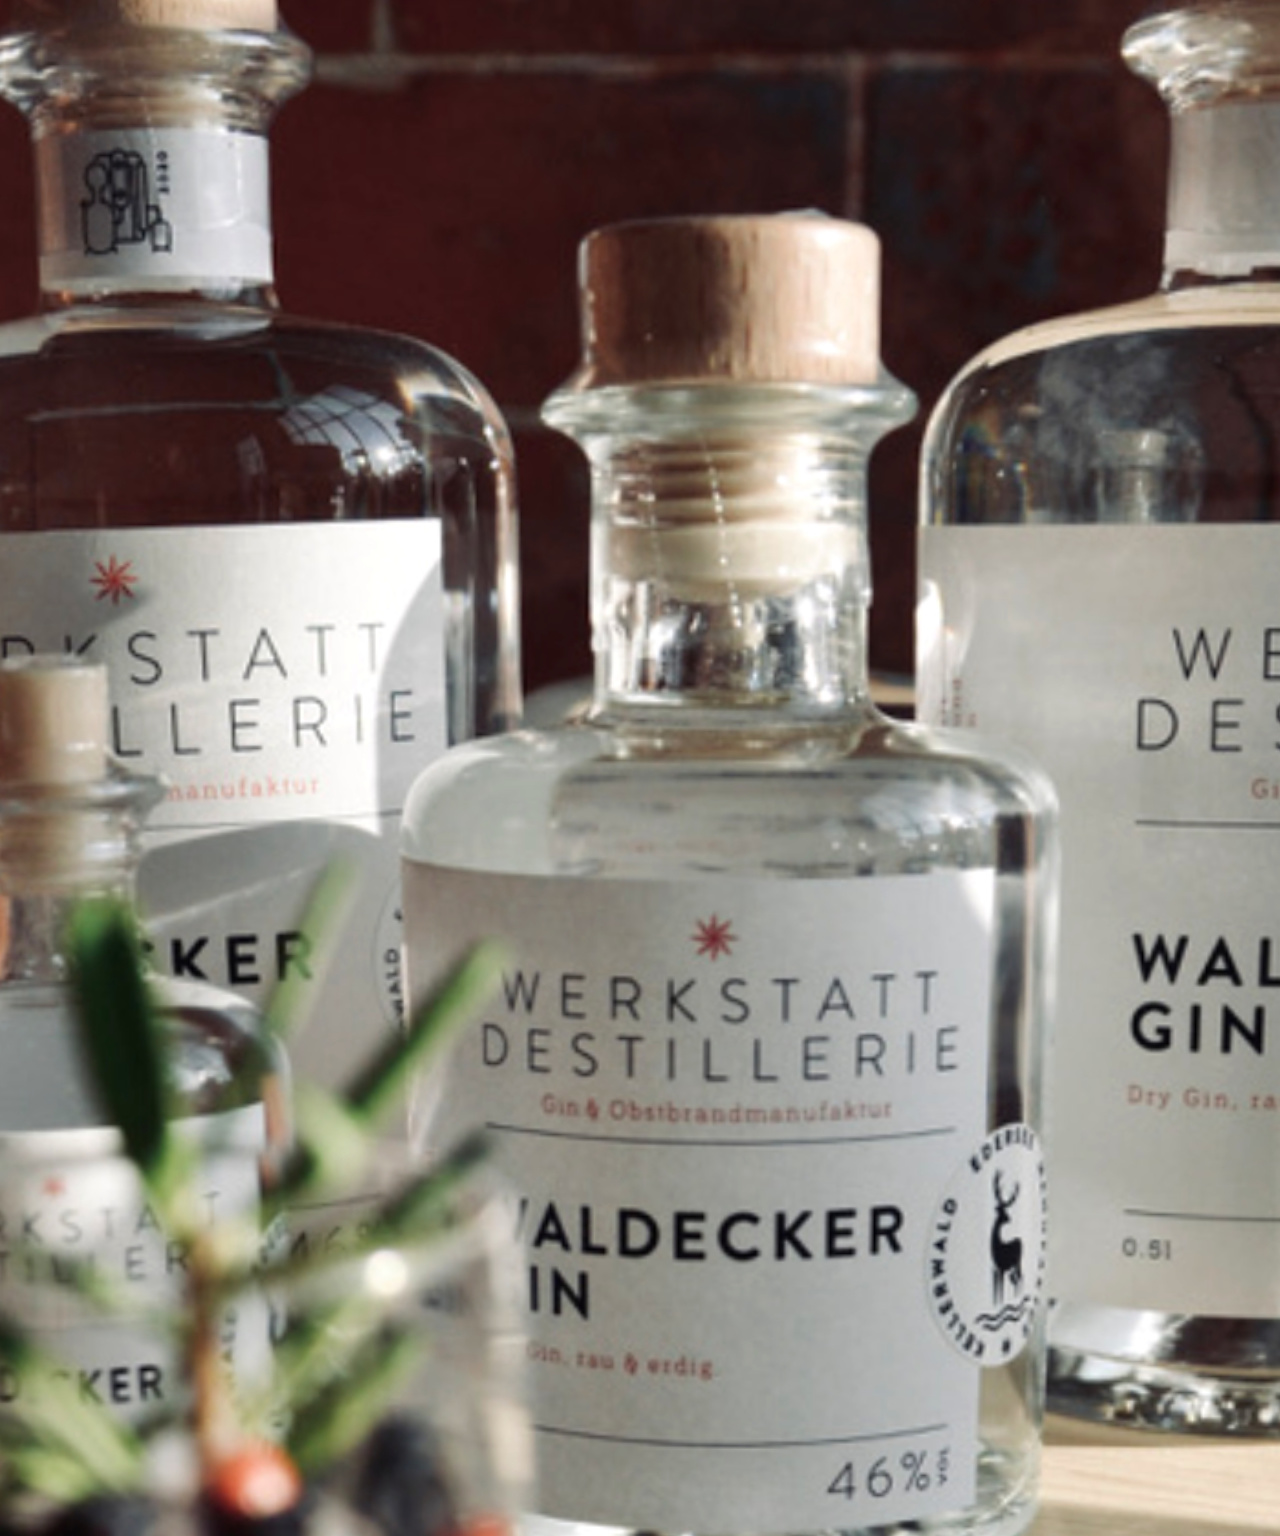 Waldecker Gin, Werkstatt Destillerie, Waldeck, Edersee